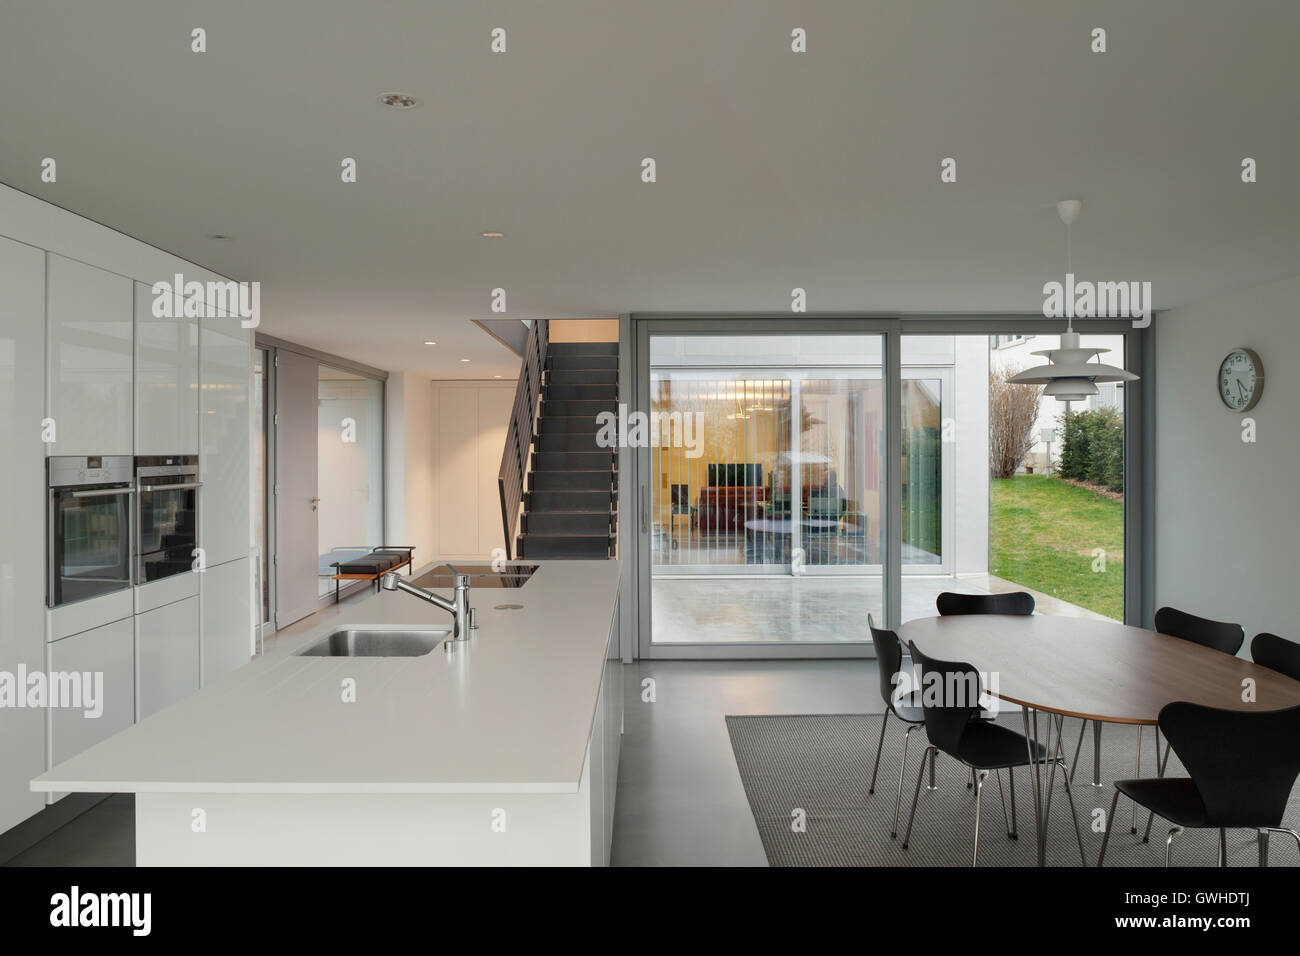 Hermosos interiores de una casa moderna, cocina blanca Foto de stock